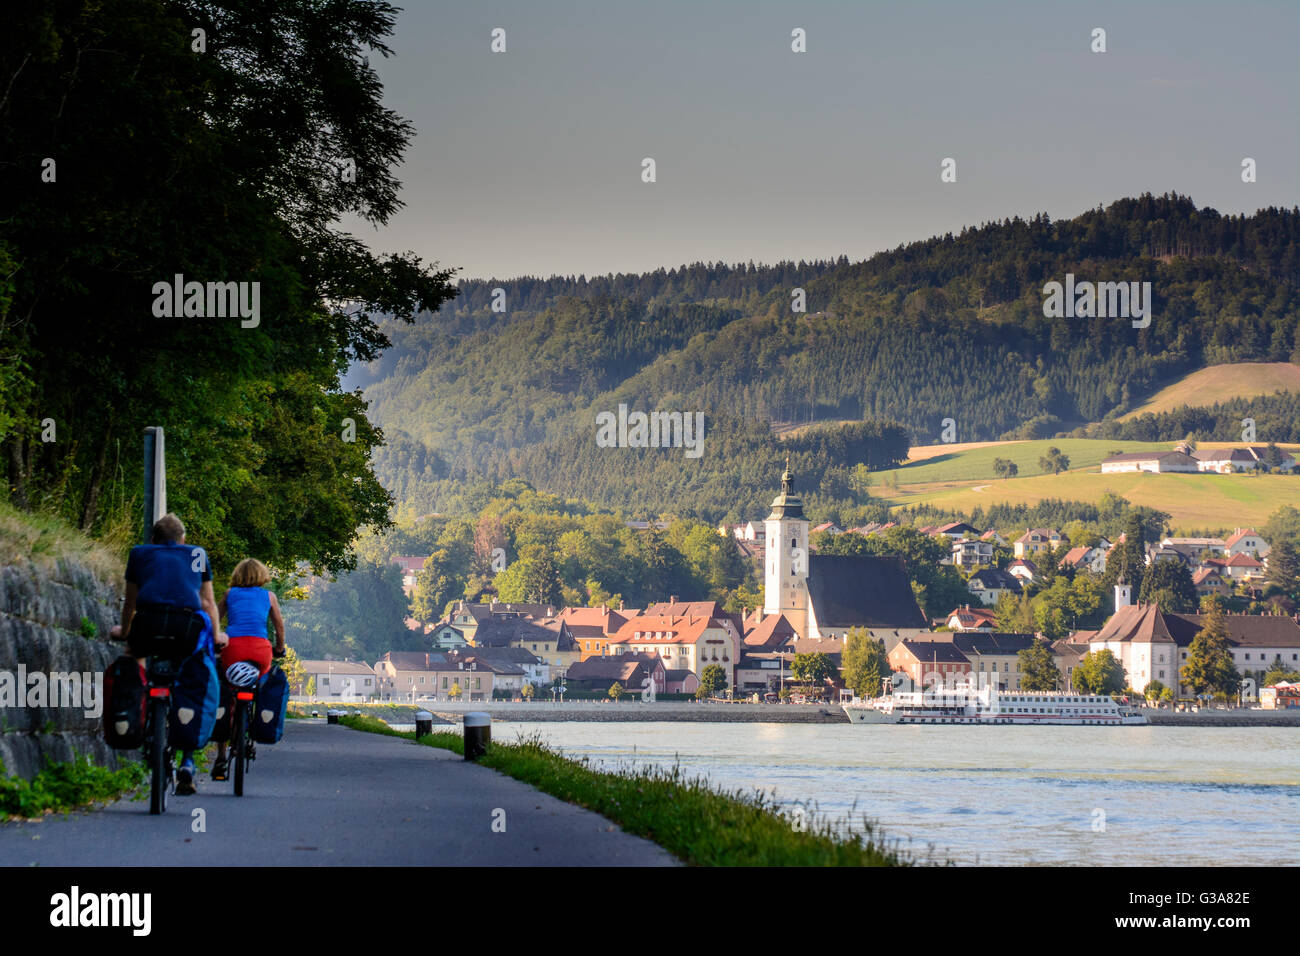 Les cyclistes sur la piste cyclable du Danube et les navires de croisière sur le Danube avant Grein, Autriche, Niederösterreich, Autriche supérieure, Donau, Gre Banque D'Images